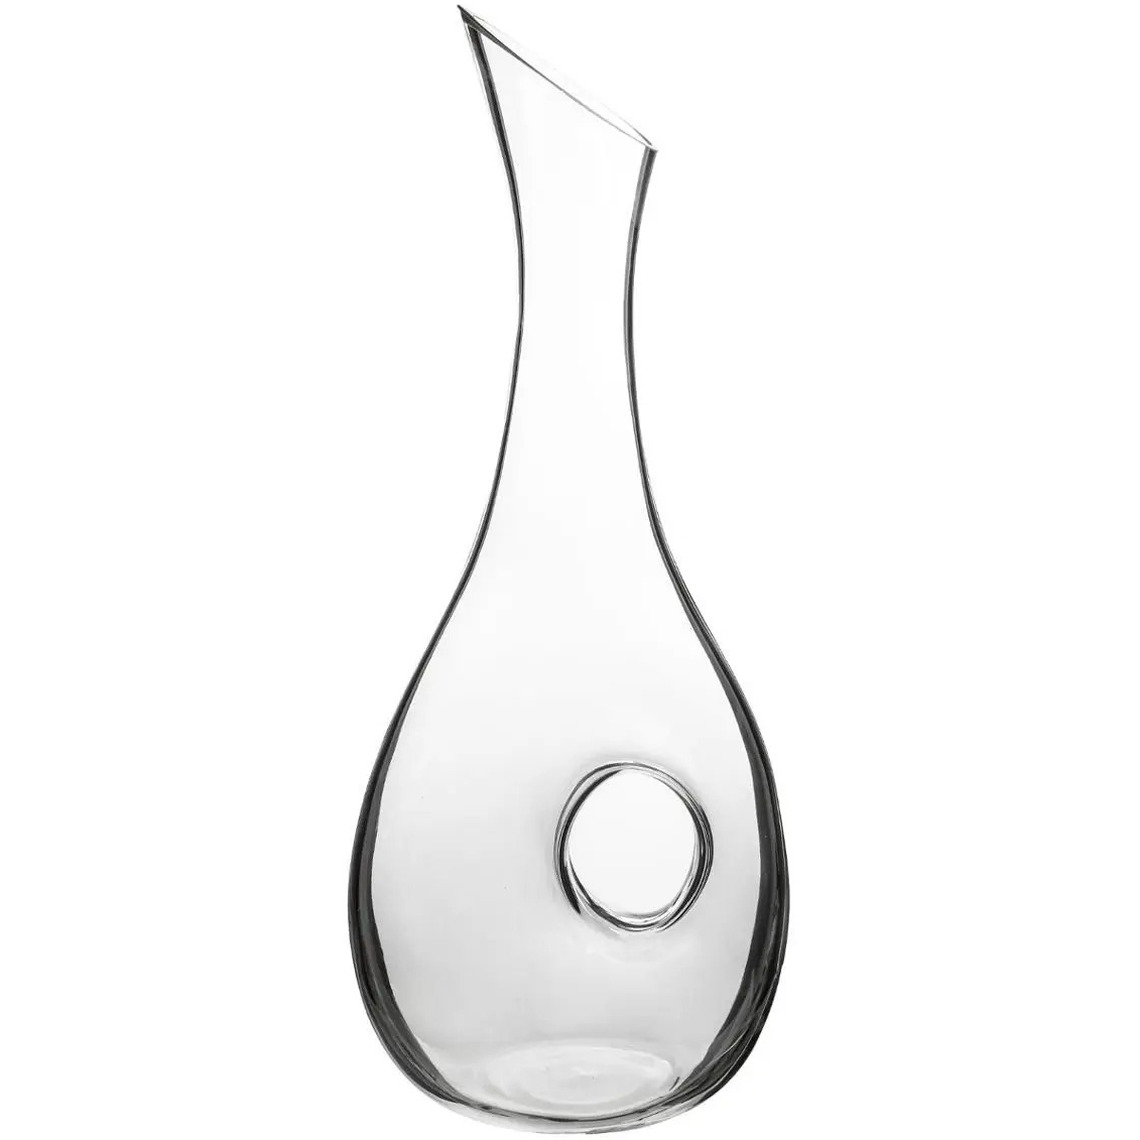 Wijn karaf-decanteer kan 1 liter van glas met slanke afgeschuinde hals